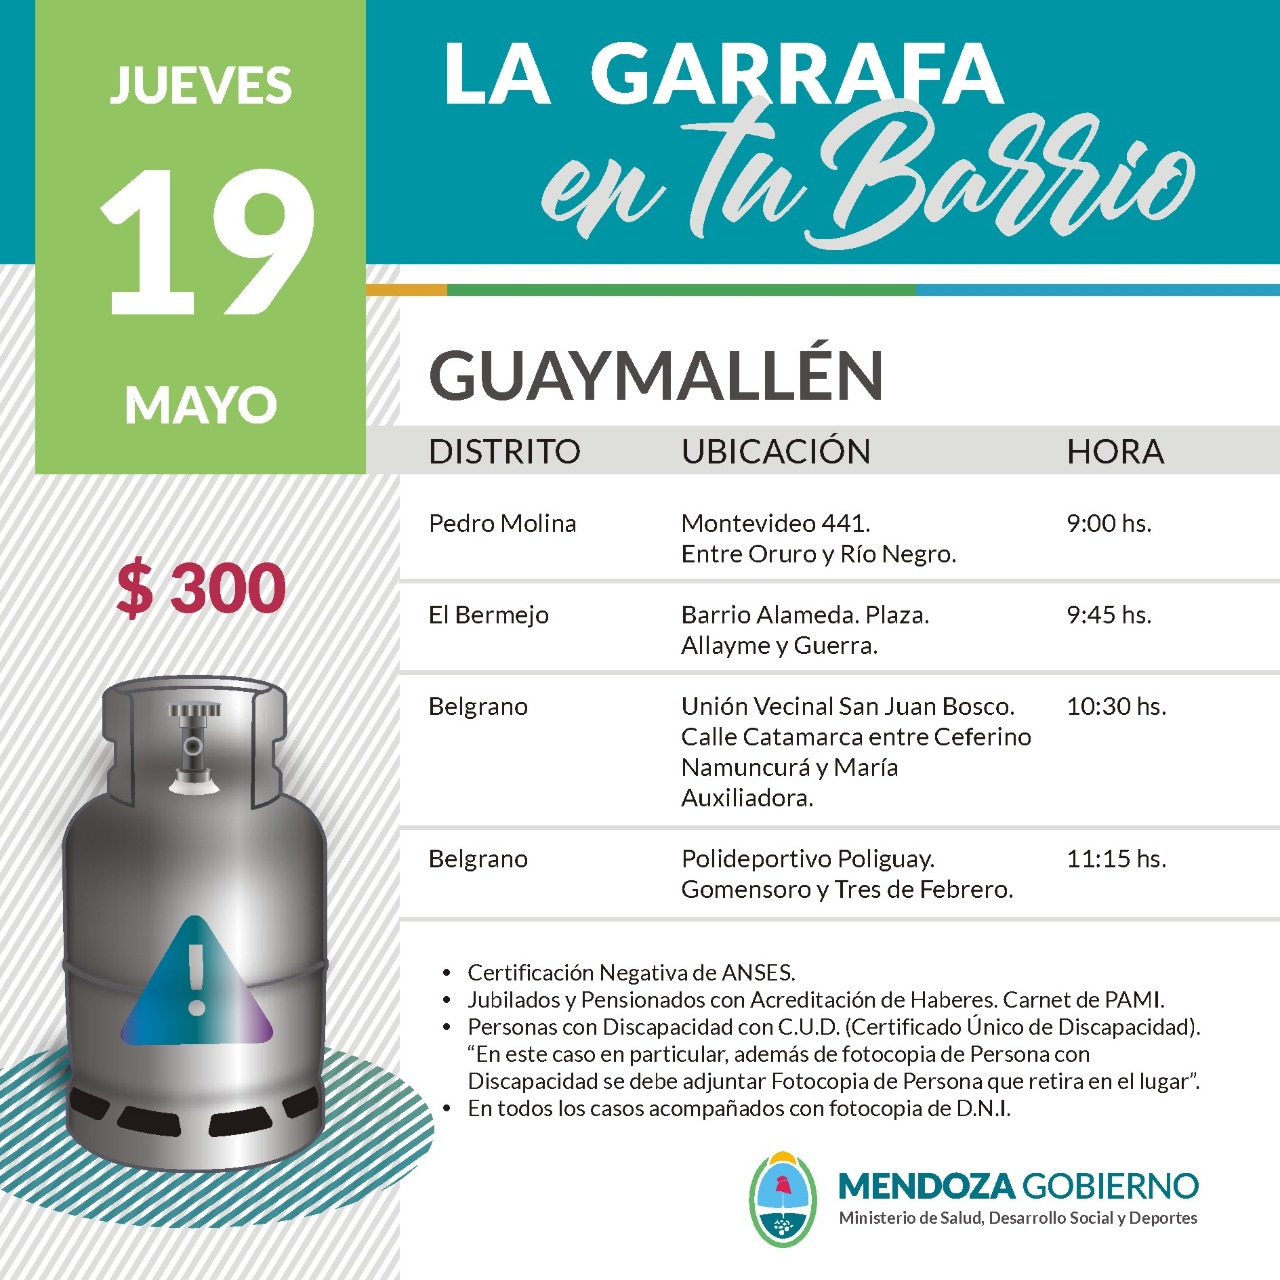 La Garrafa en tu Barrio con subsidio provincial. 19 de mayo.